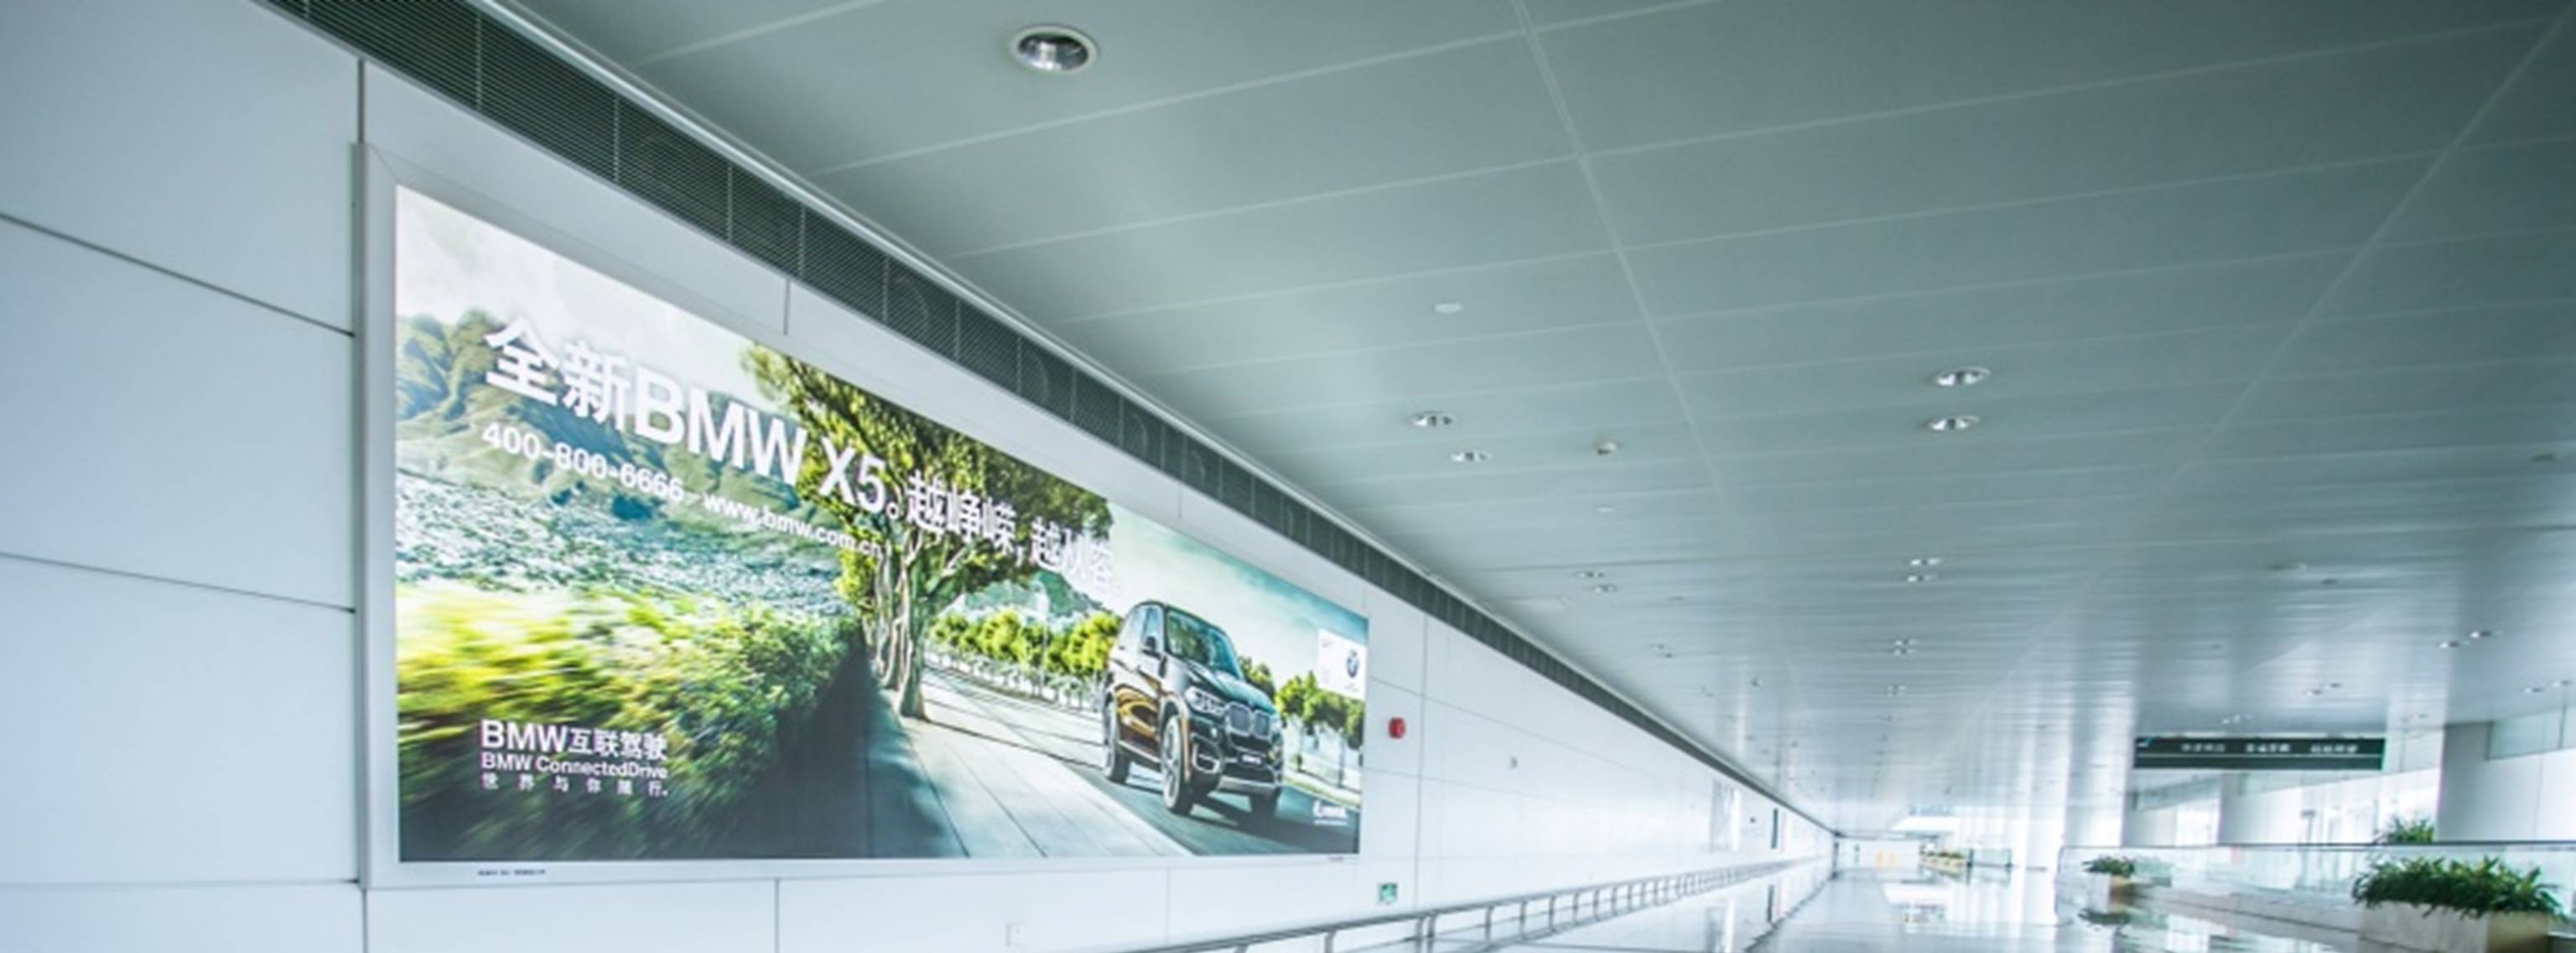 杭州萧山机场广告-T3到达通廊自动扶梯旁灯箱DA66